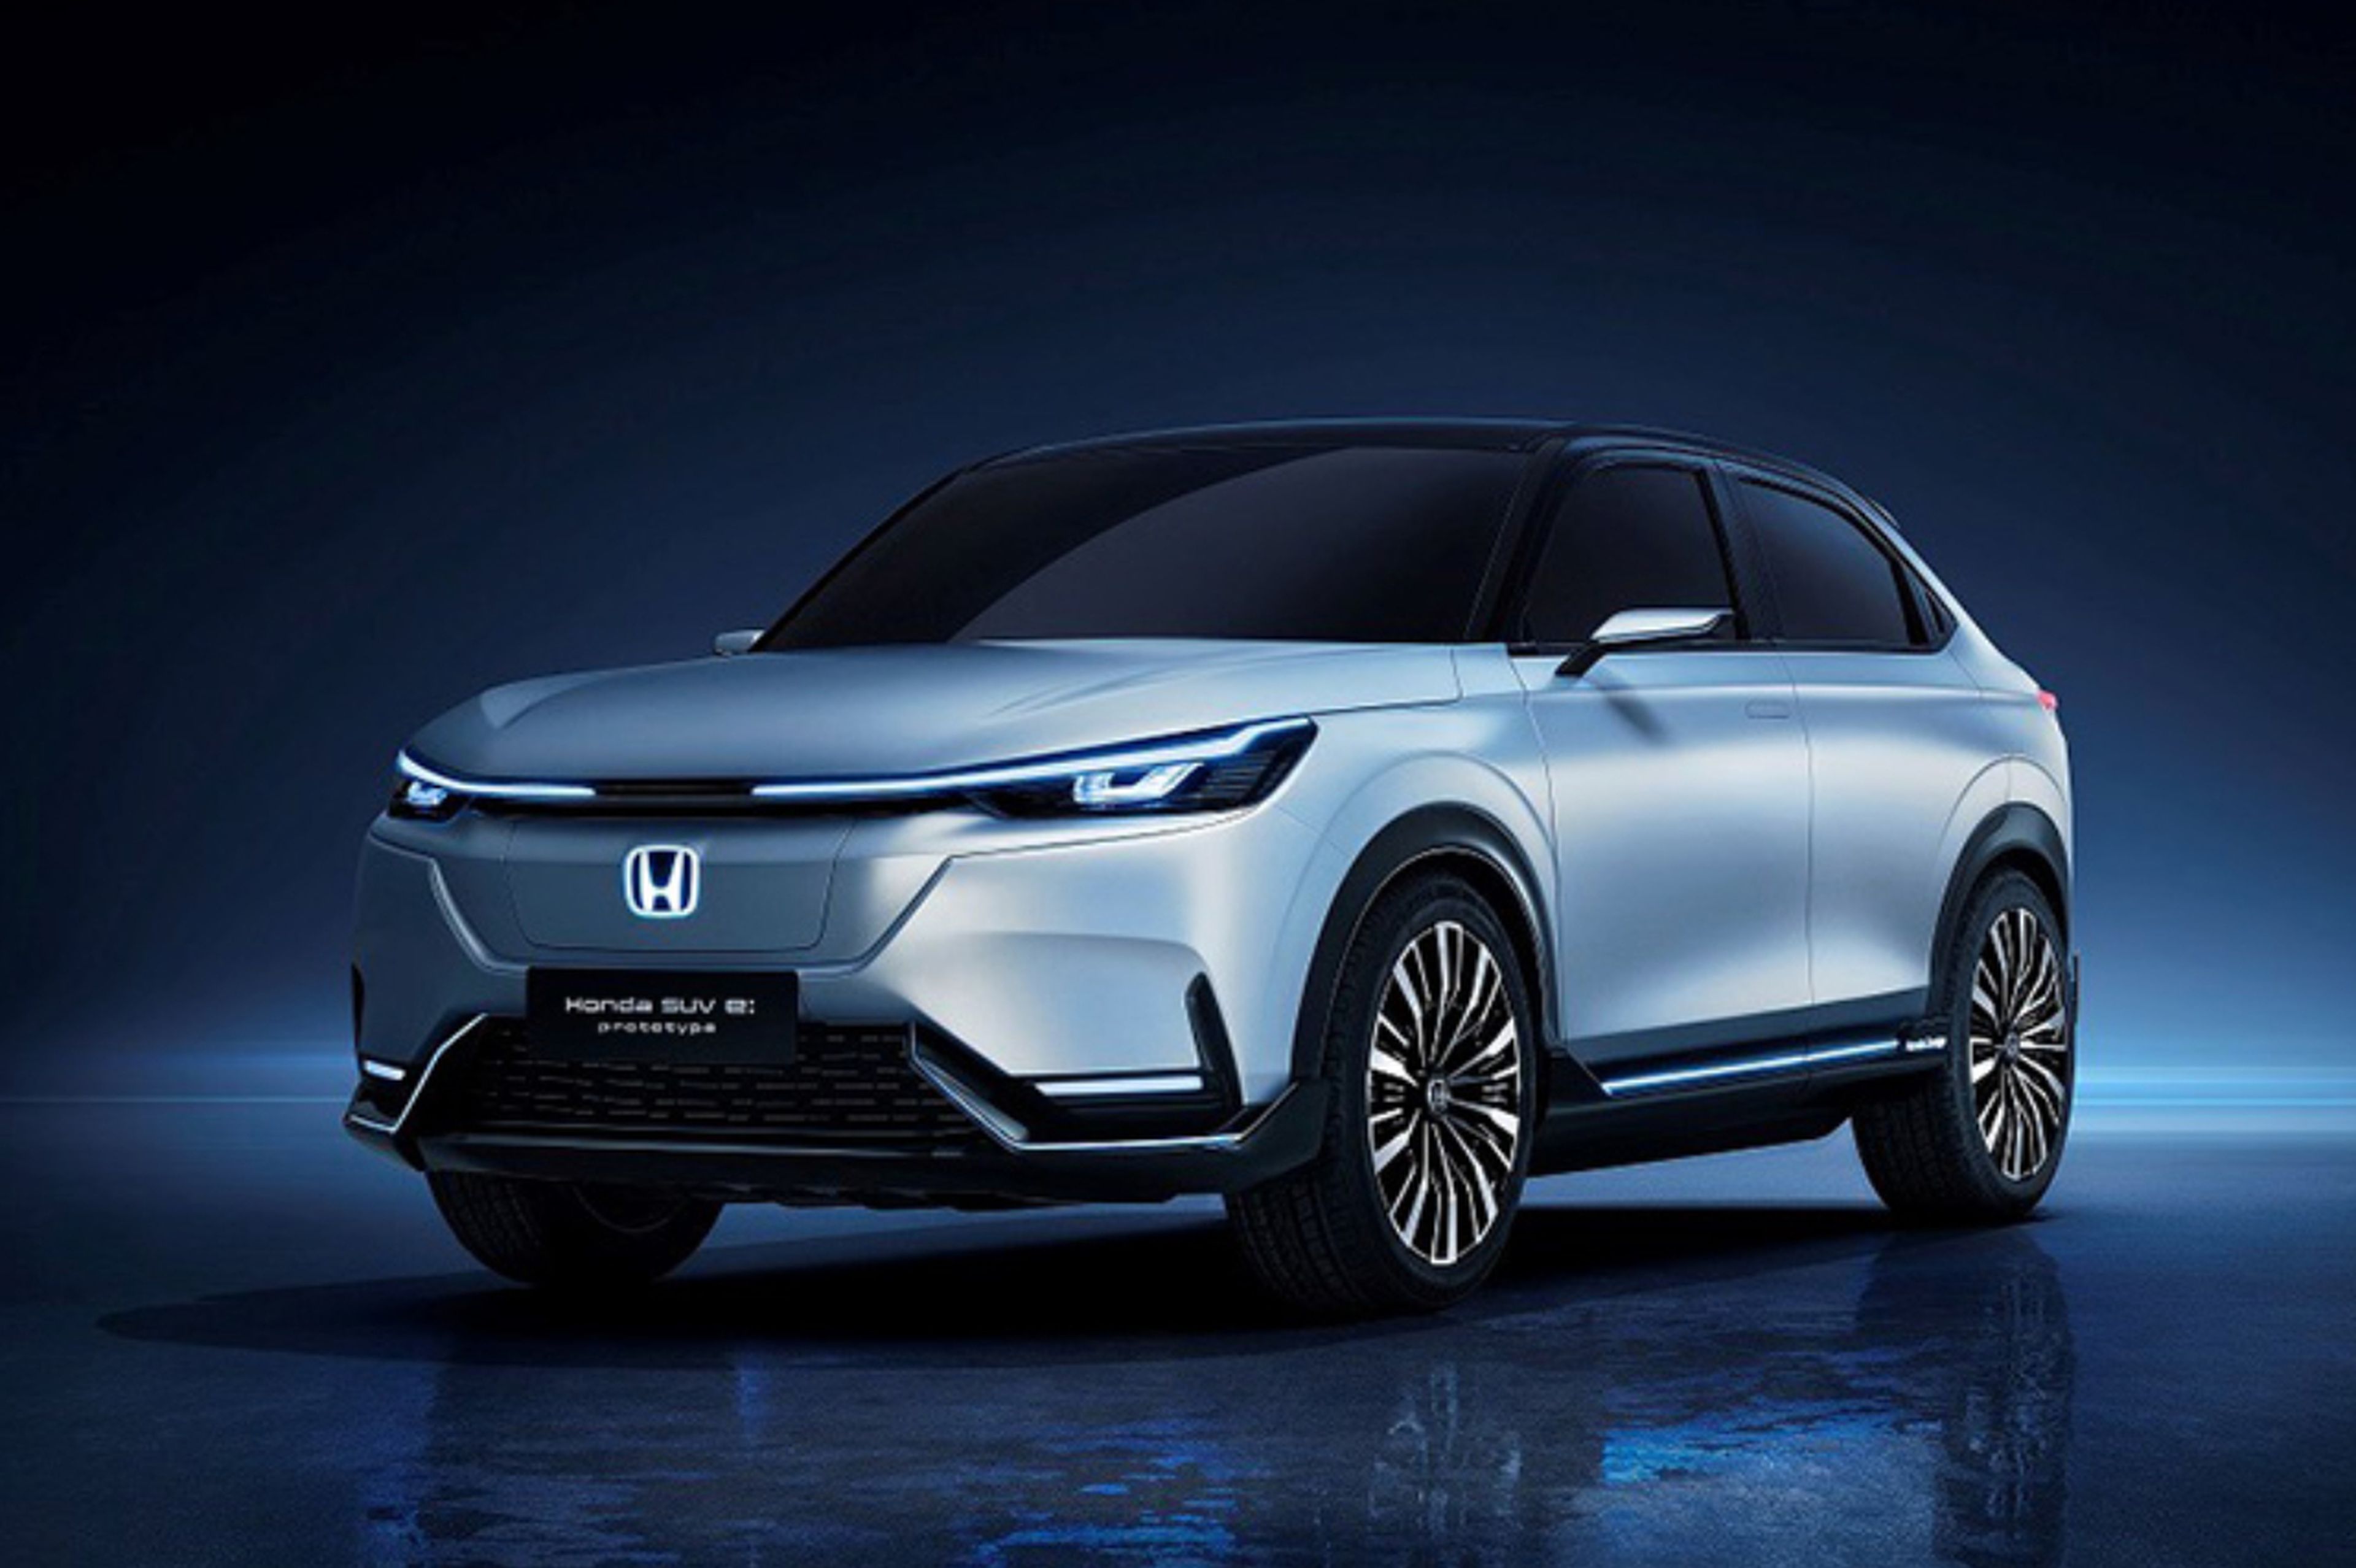 Honda SUV e:prototype: estas son las líneas maestras del nuevo crossover japonés